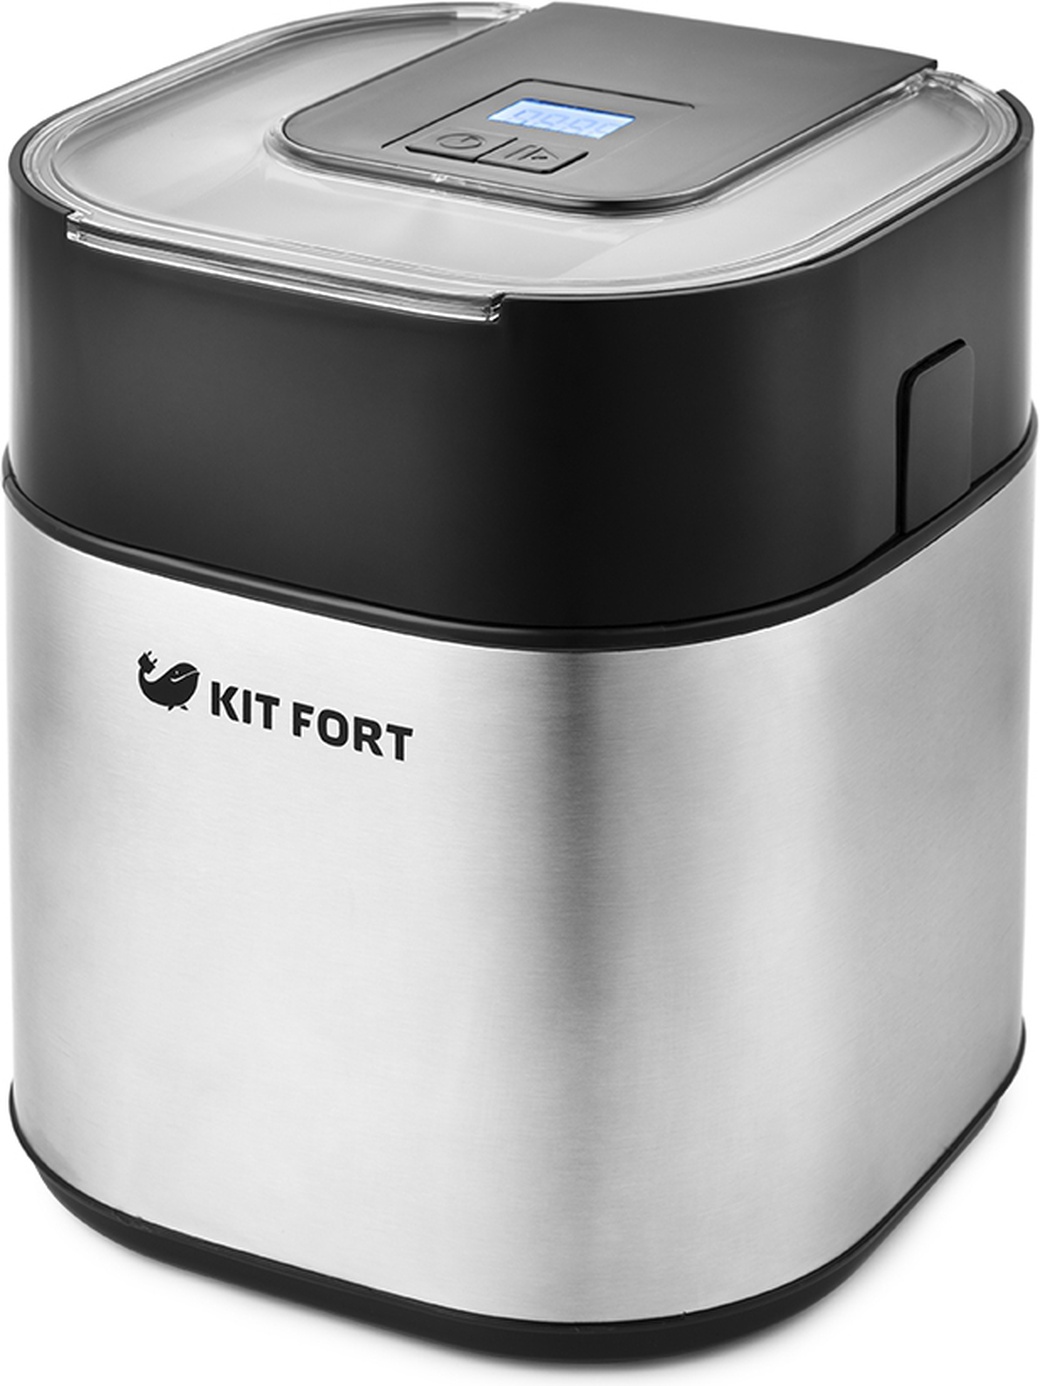 Мороженица Kitfort КТ-1805 9.5Вт 1500мл. серебристый/черный фото